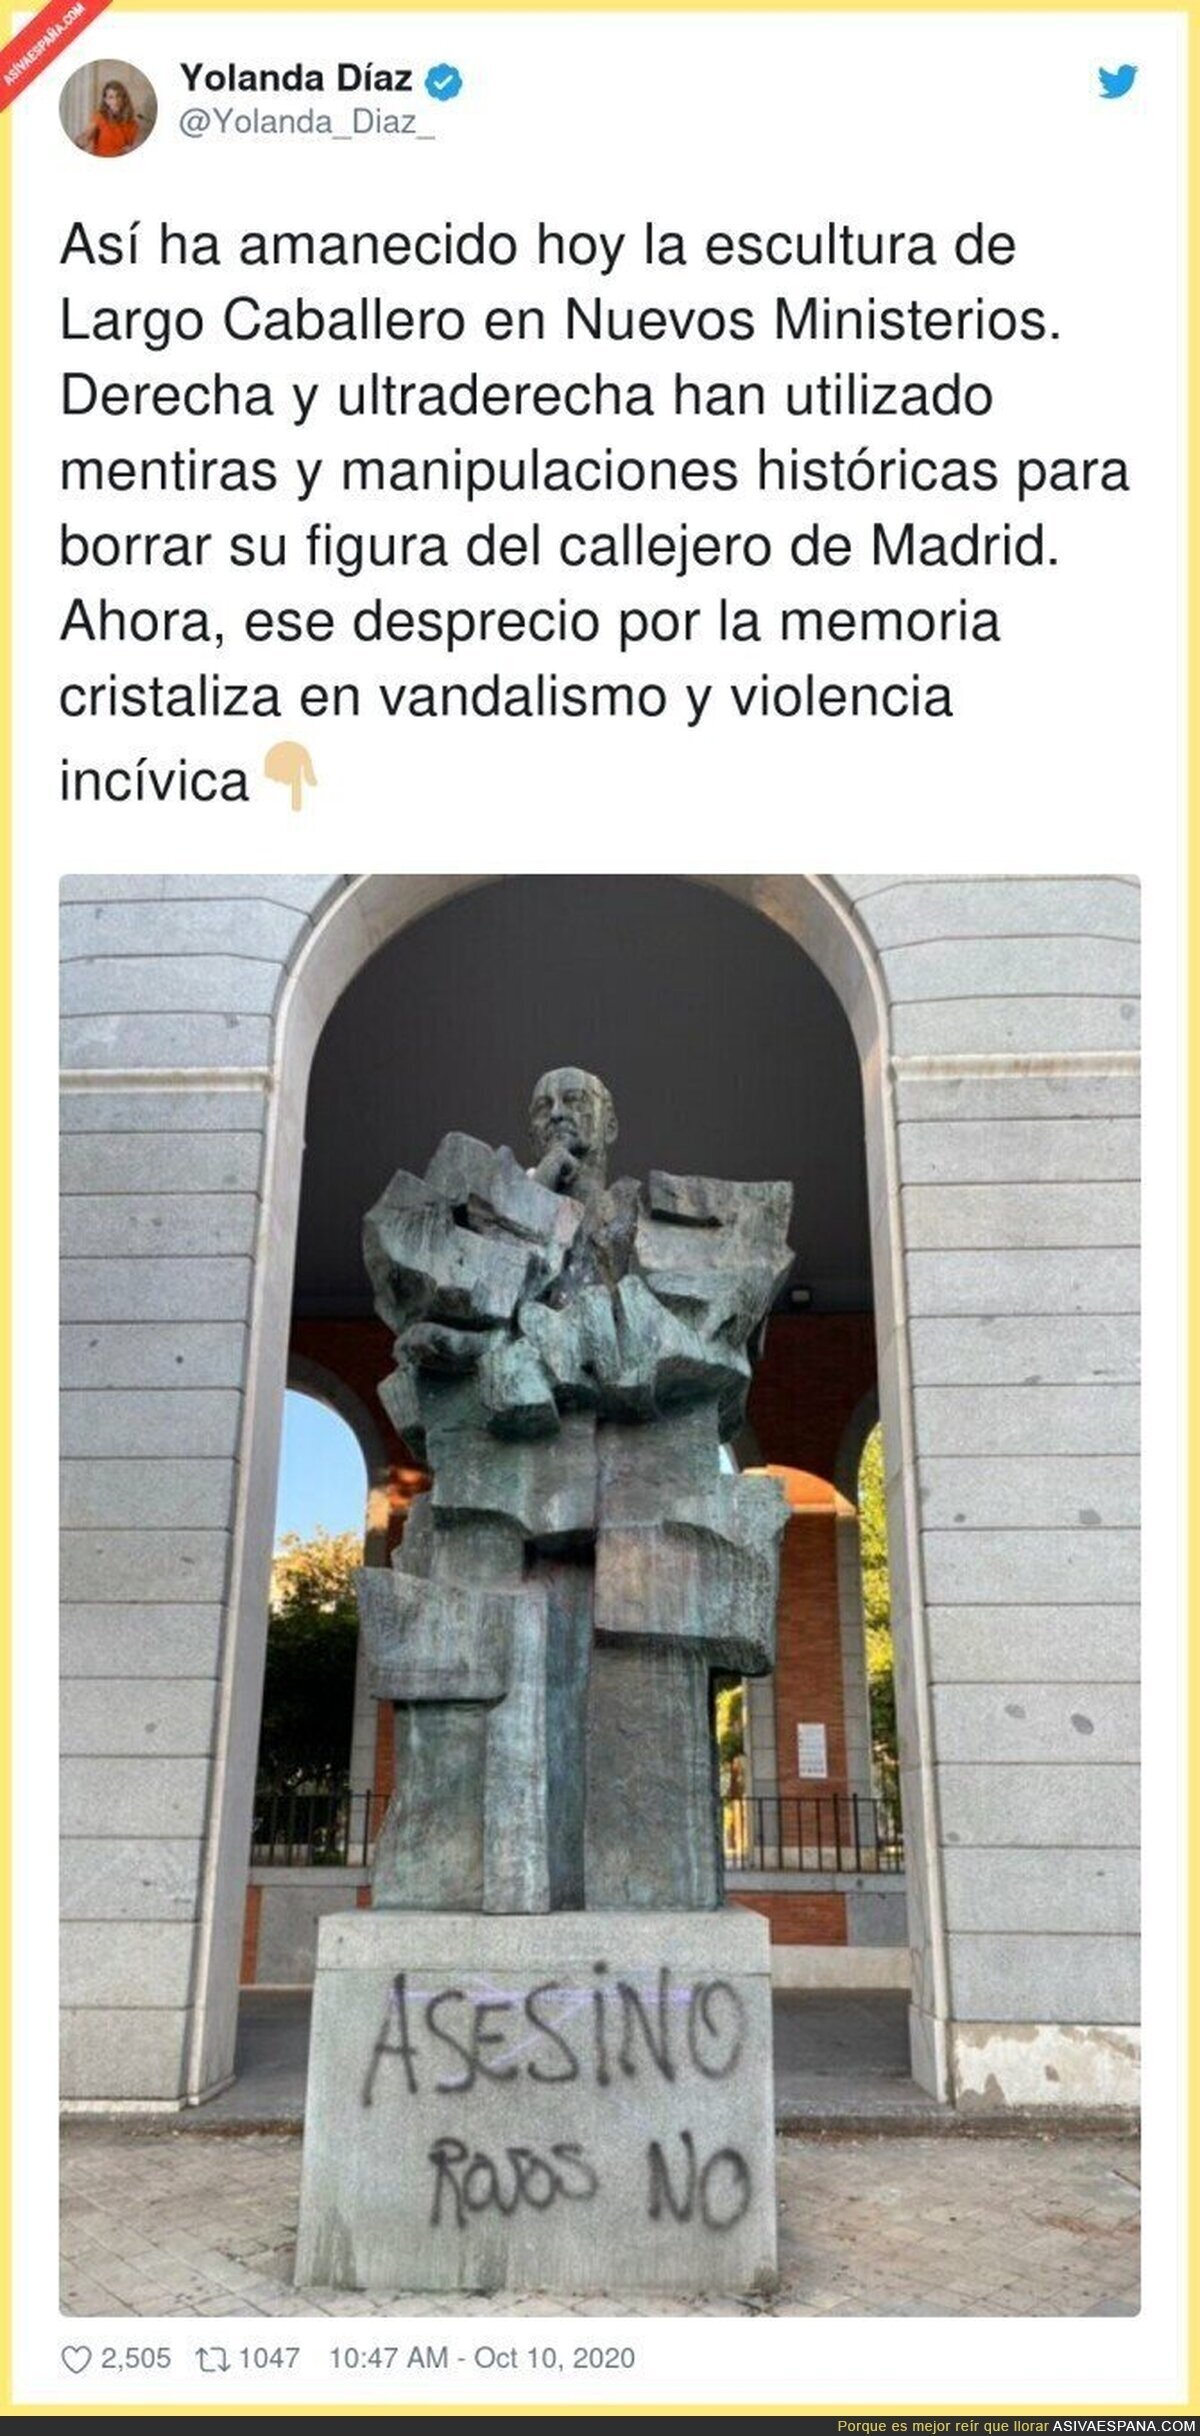 Lamentable el vandalismo que hay por Madrid por culpa de la ultraderecha